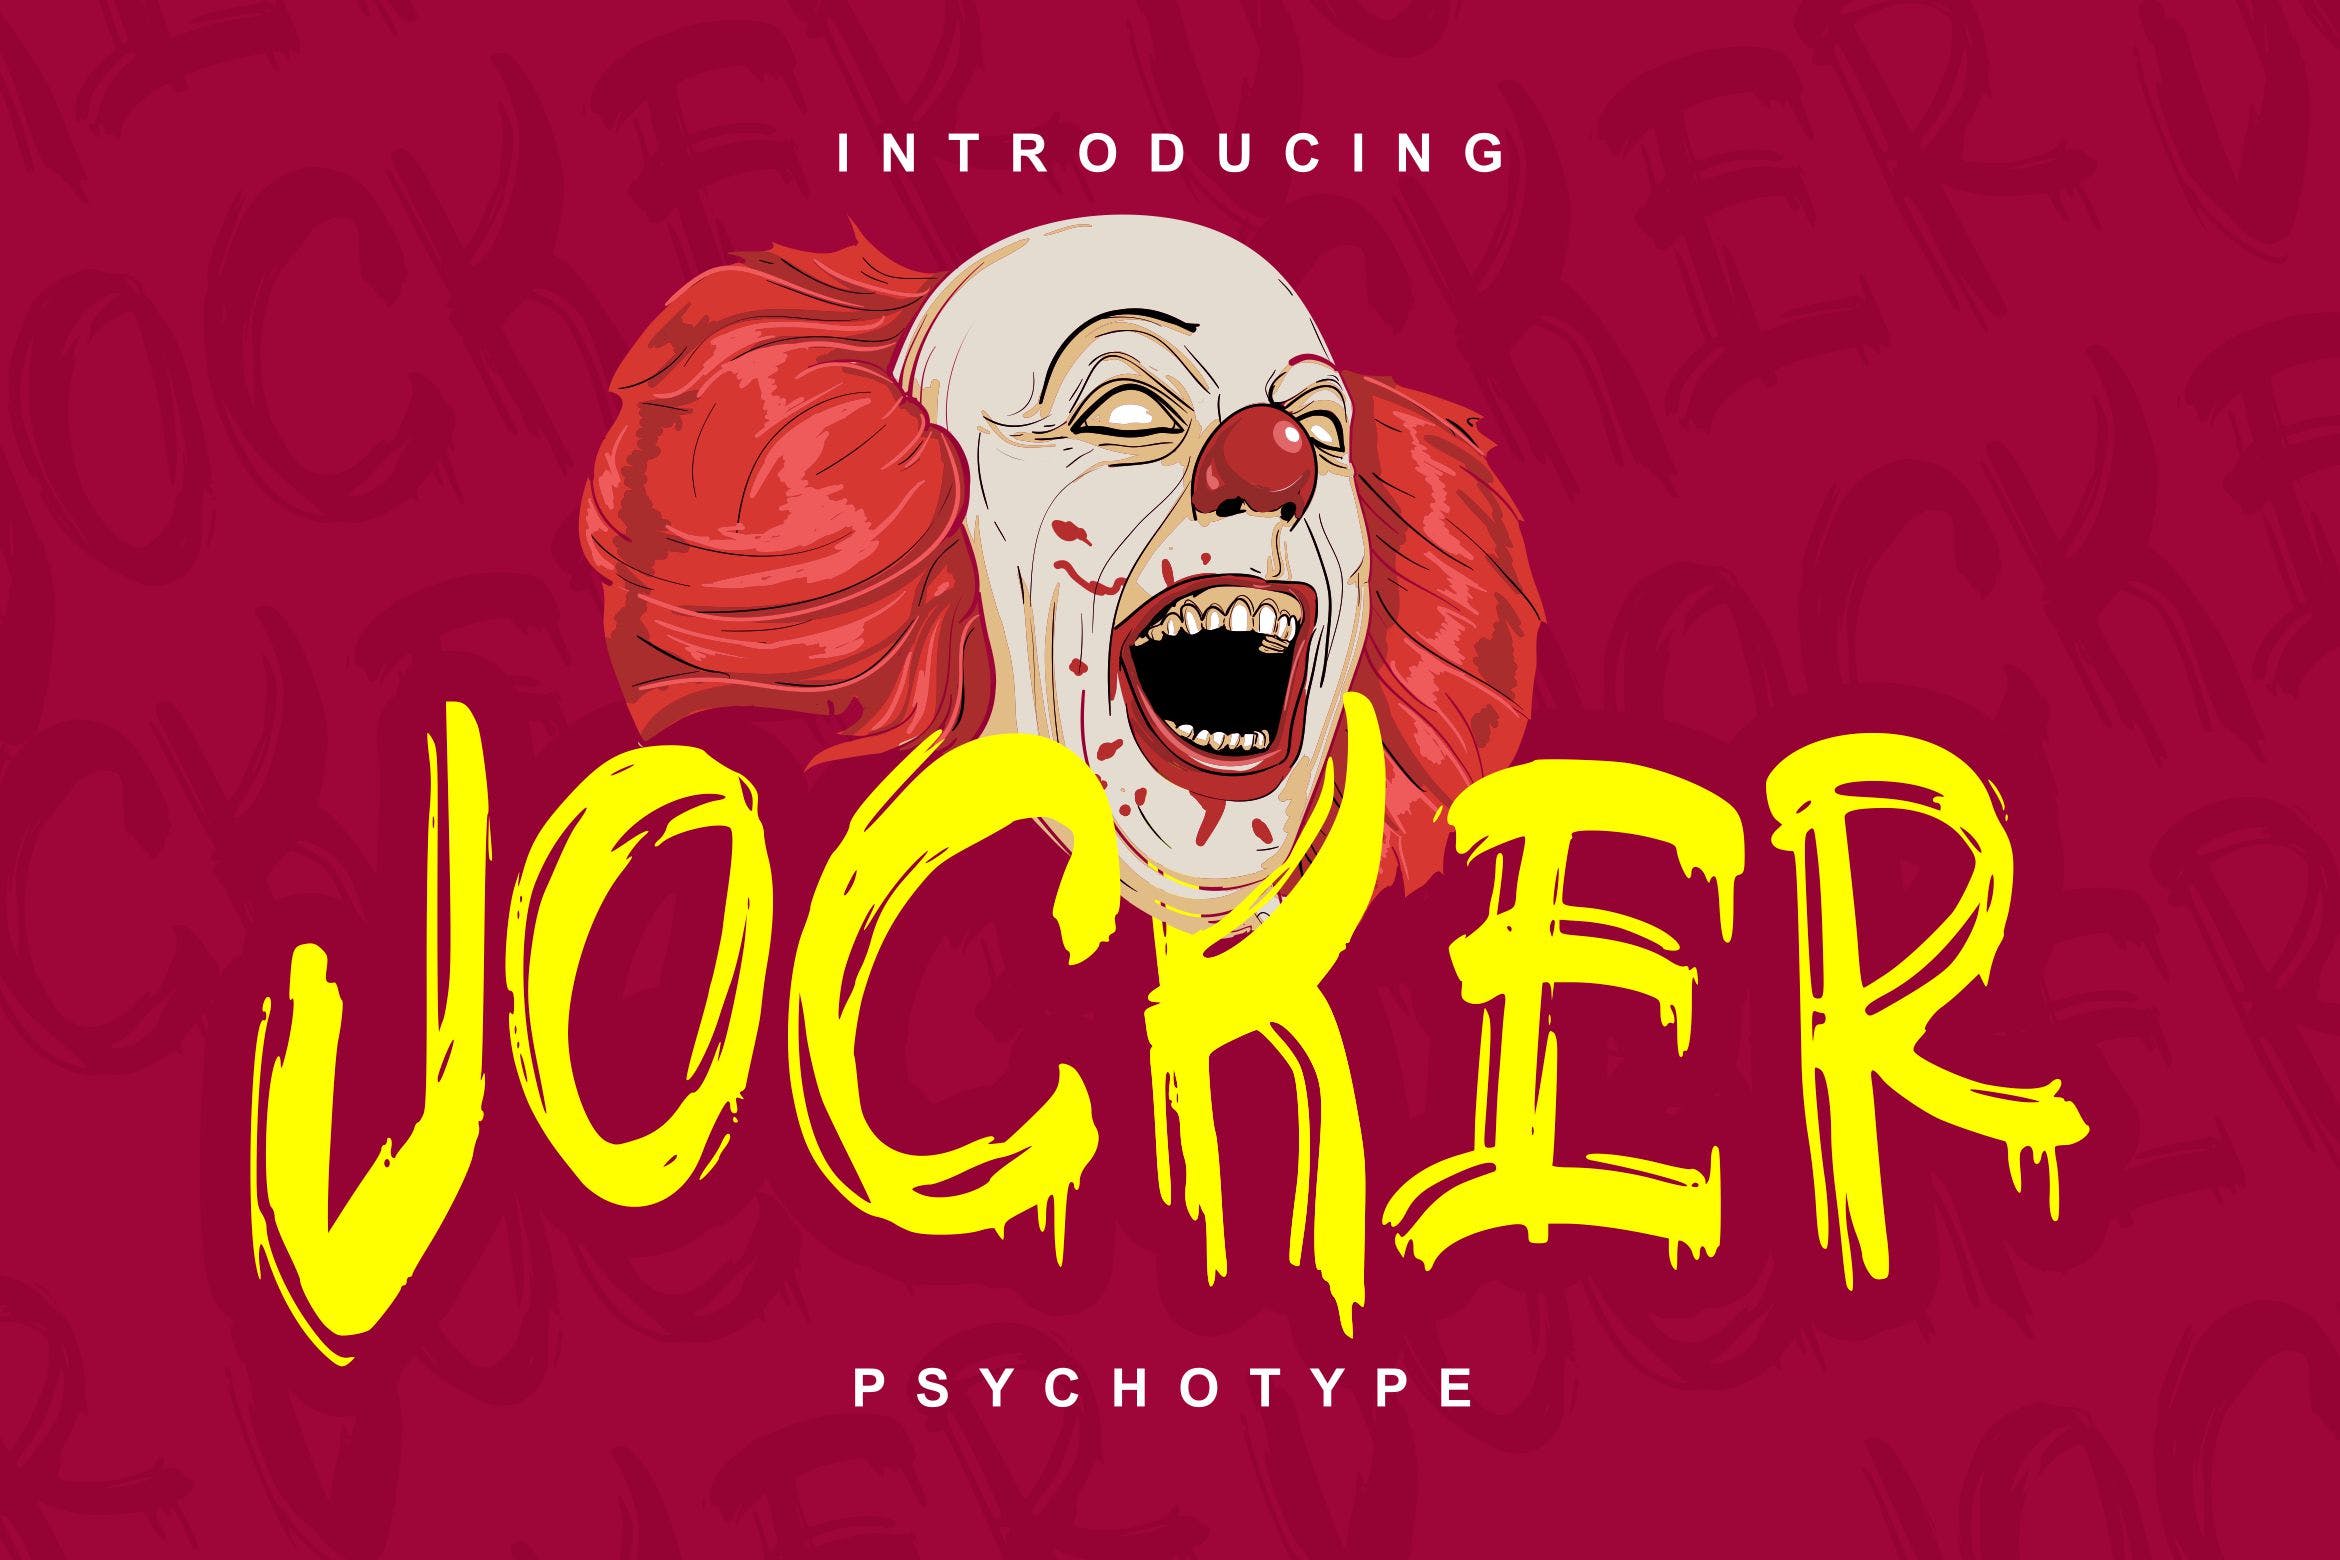 极具个性的英文笔刷装饰字体非凡图库精选 Jocker | Psychotype Font Theme插图